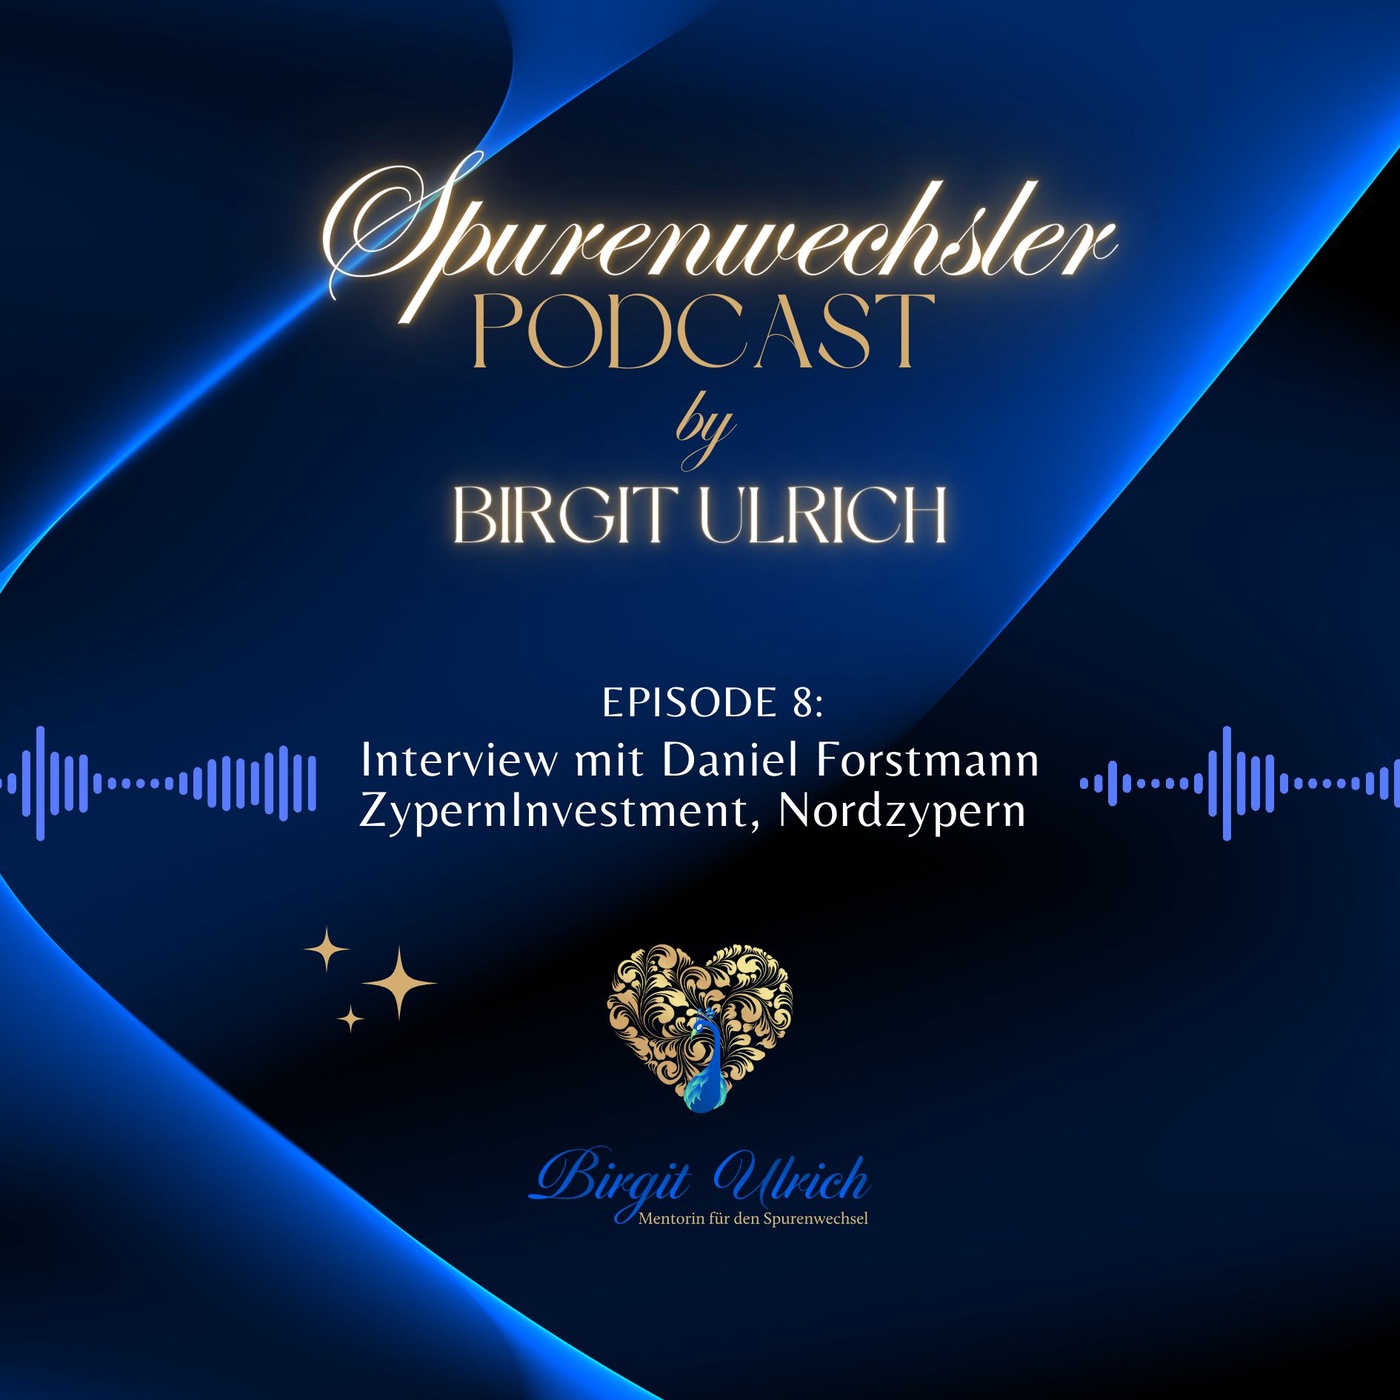 Spurenwechsler Podcast - Episode #8 mit Birgit und Daniel Forstmann